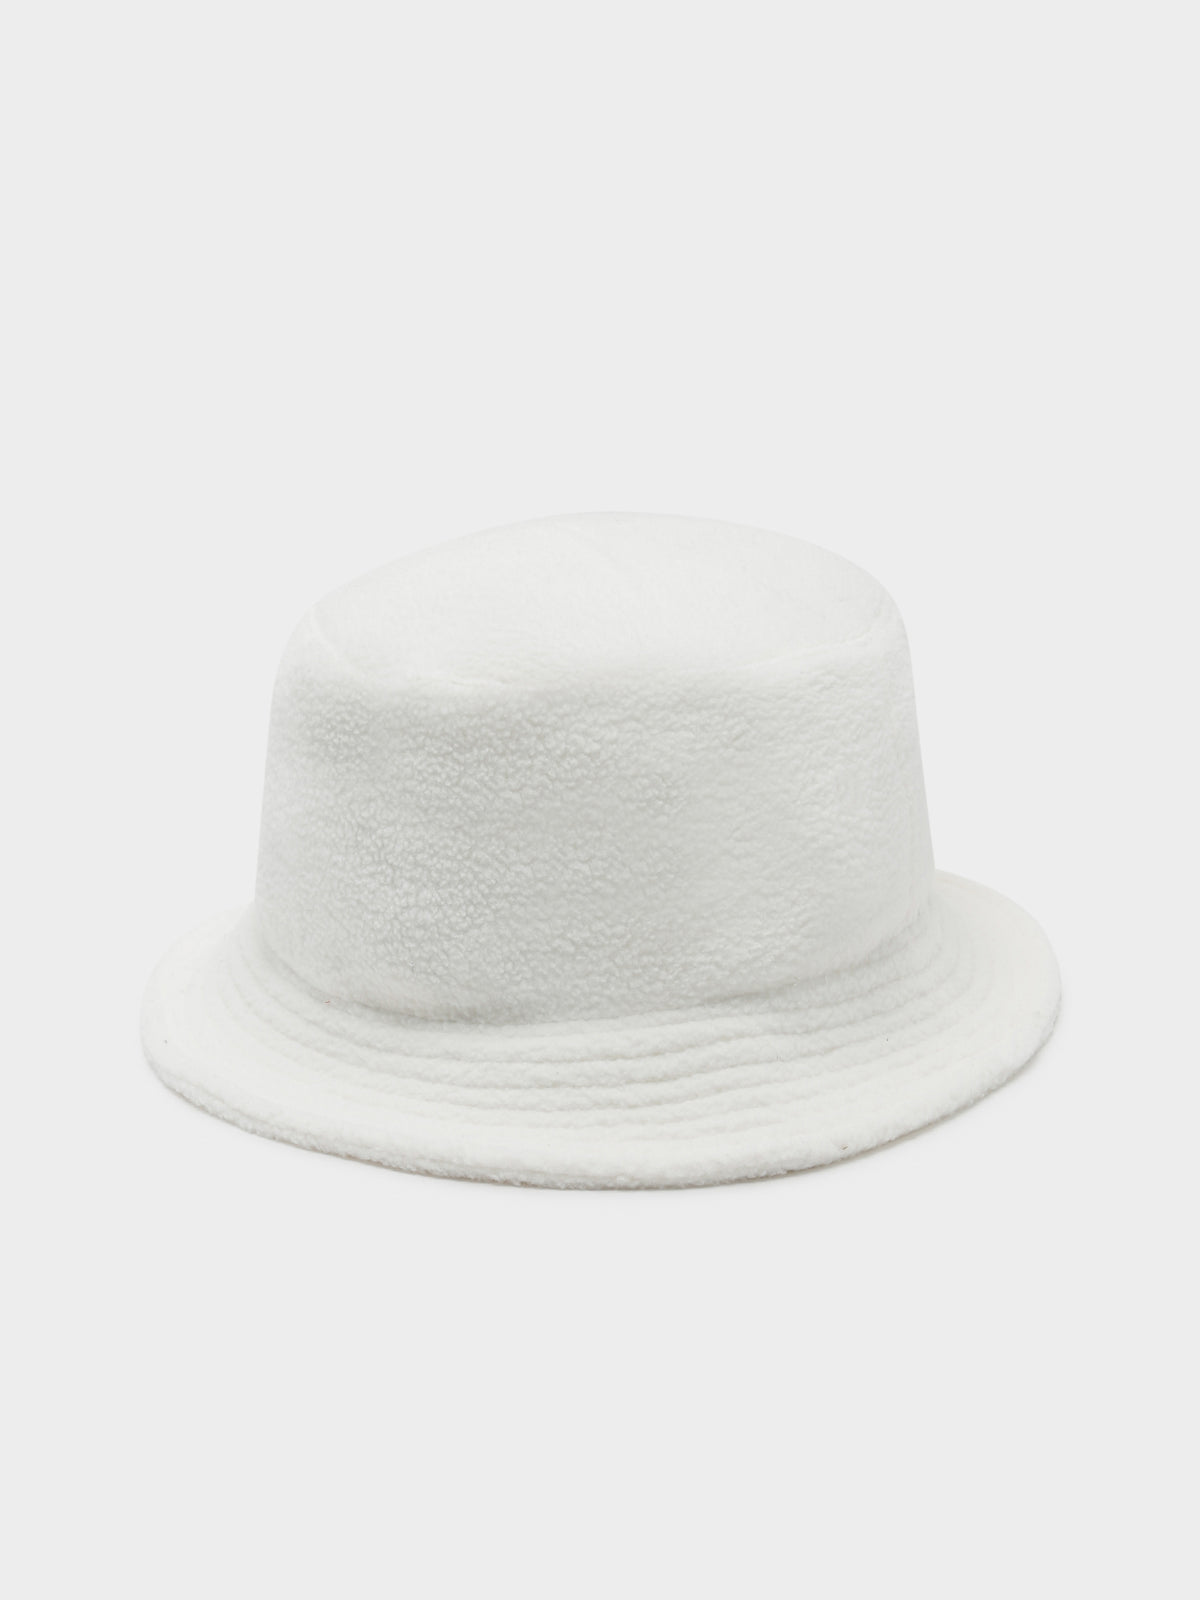 Polo Sport Fleece Bucket Hat in Cream